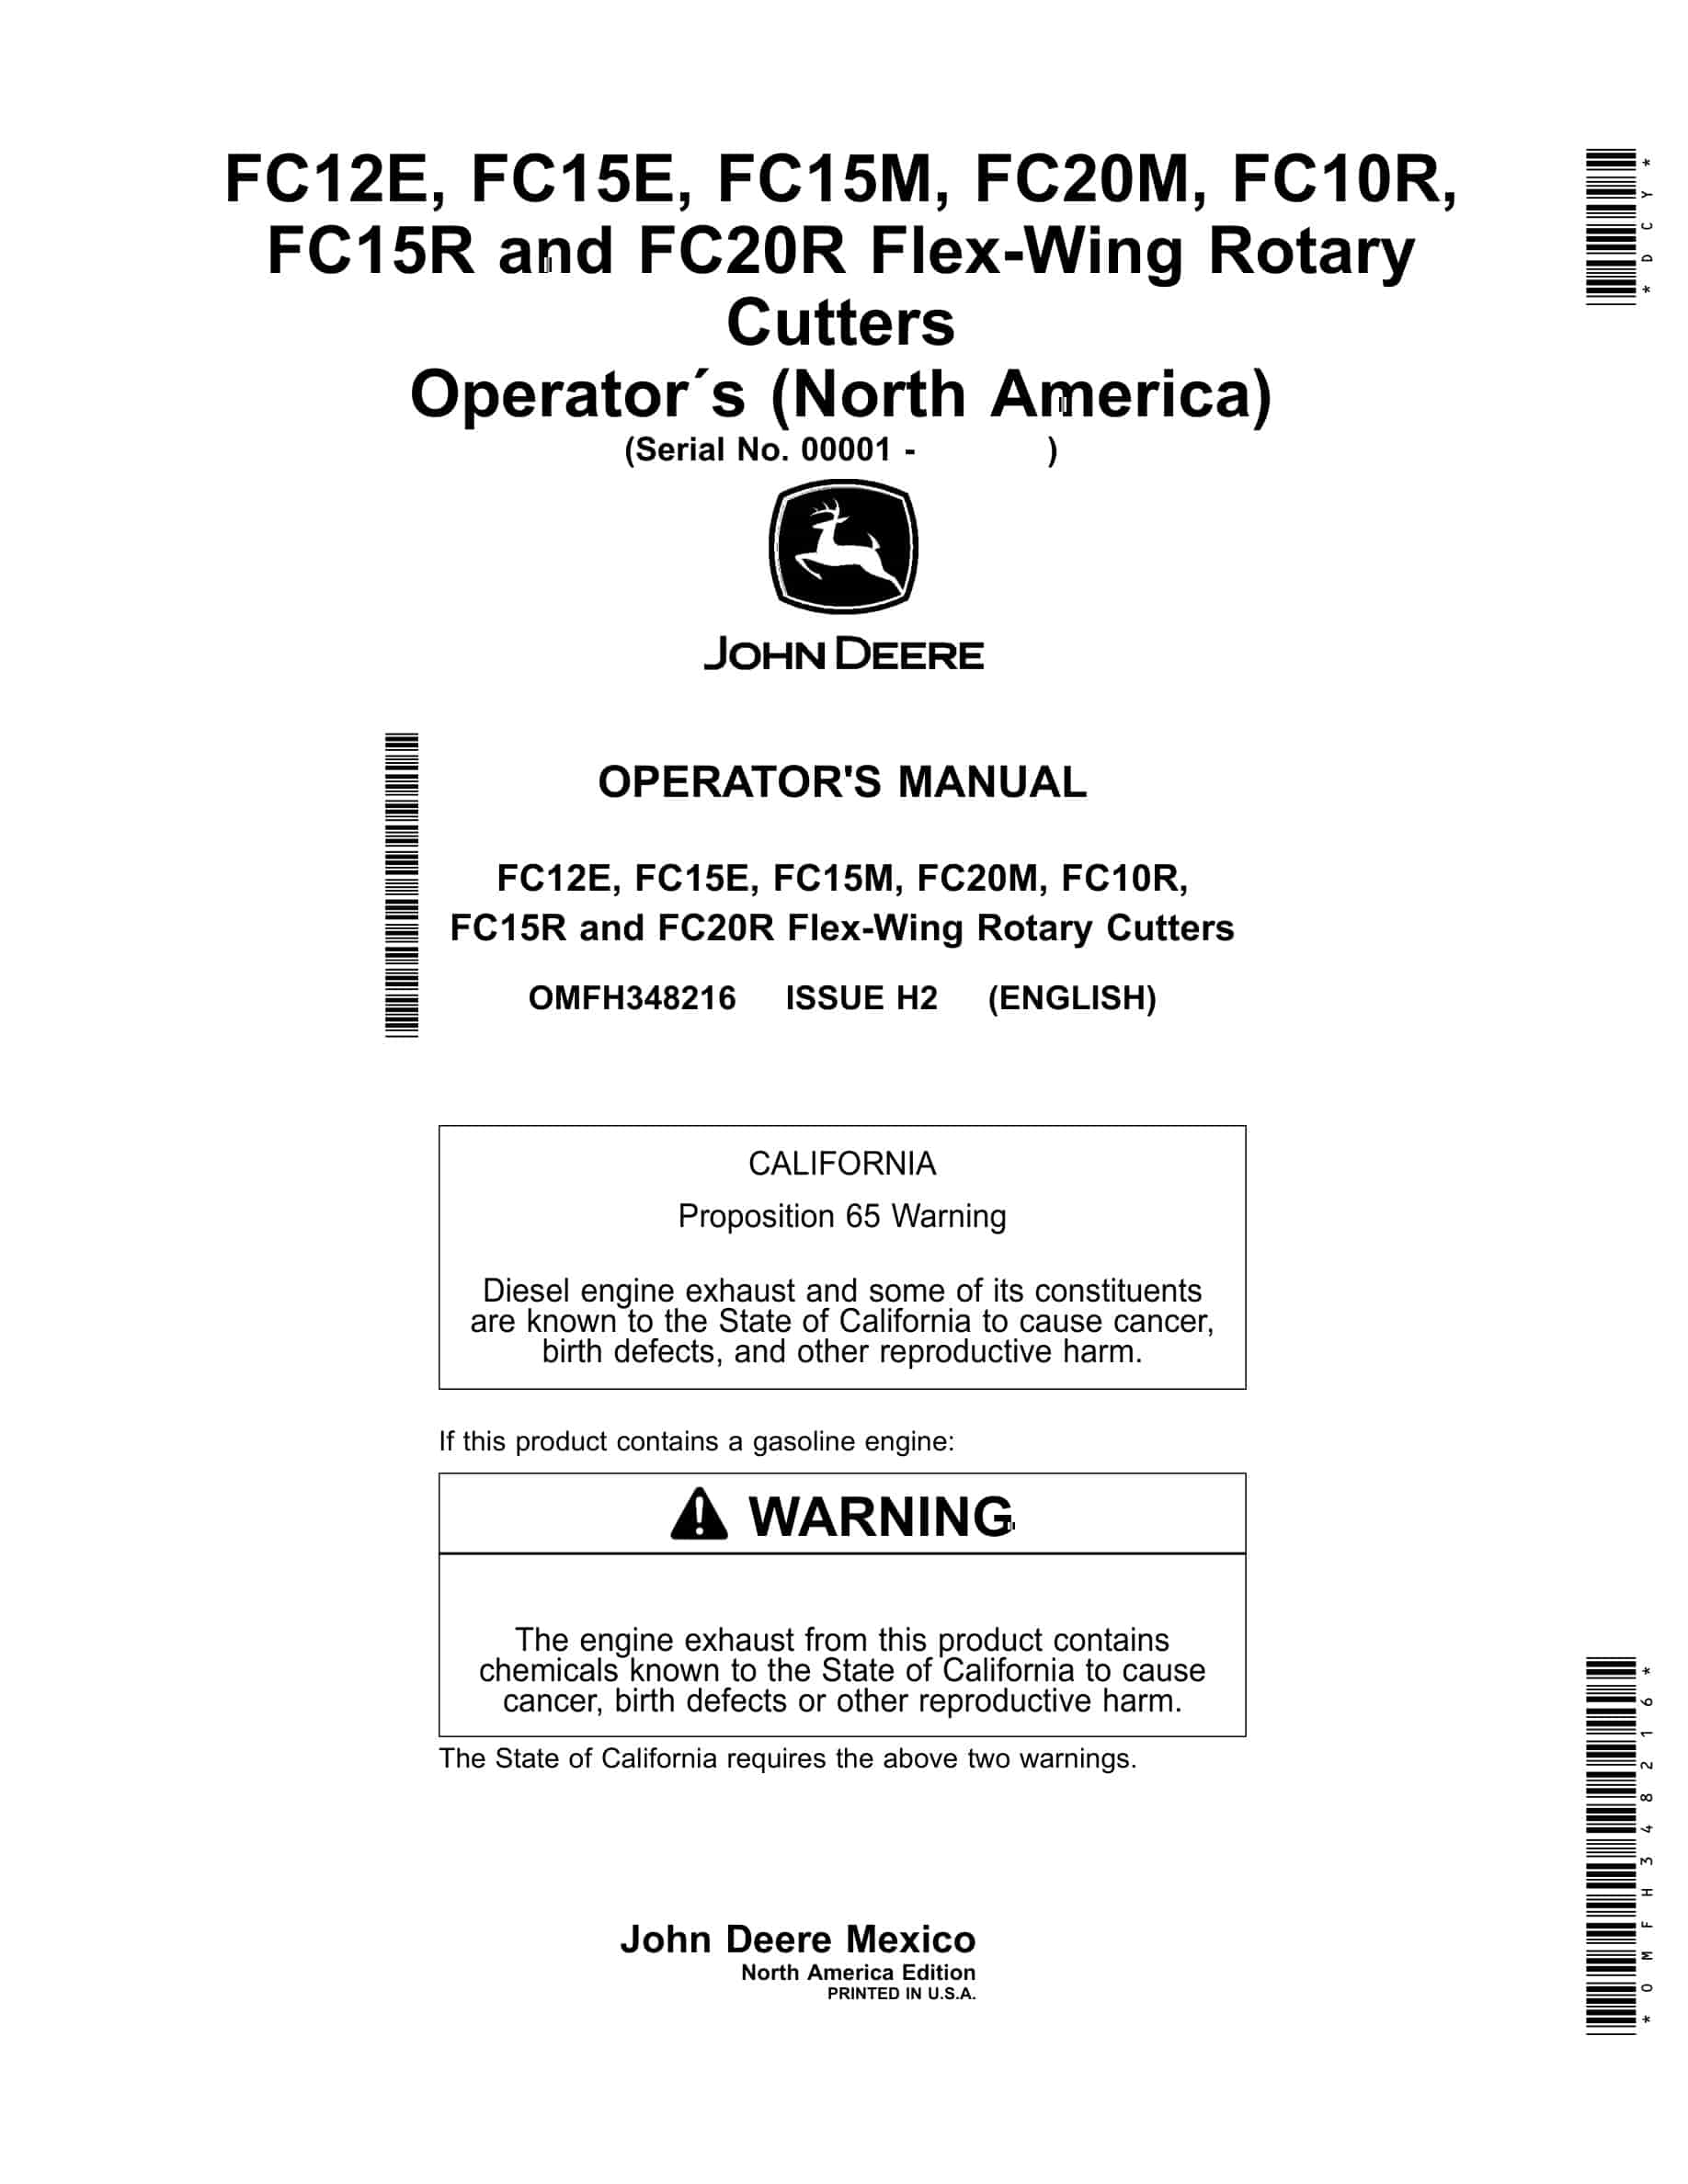 John Deere FC12E, FC15E, FC15M, FC20M, FC10R, FC15R and FC20R Flex Operator Manual OMFH348216-1